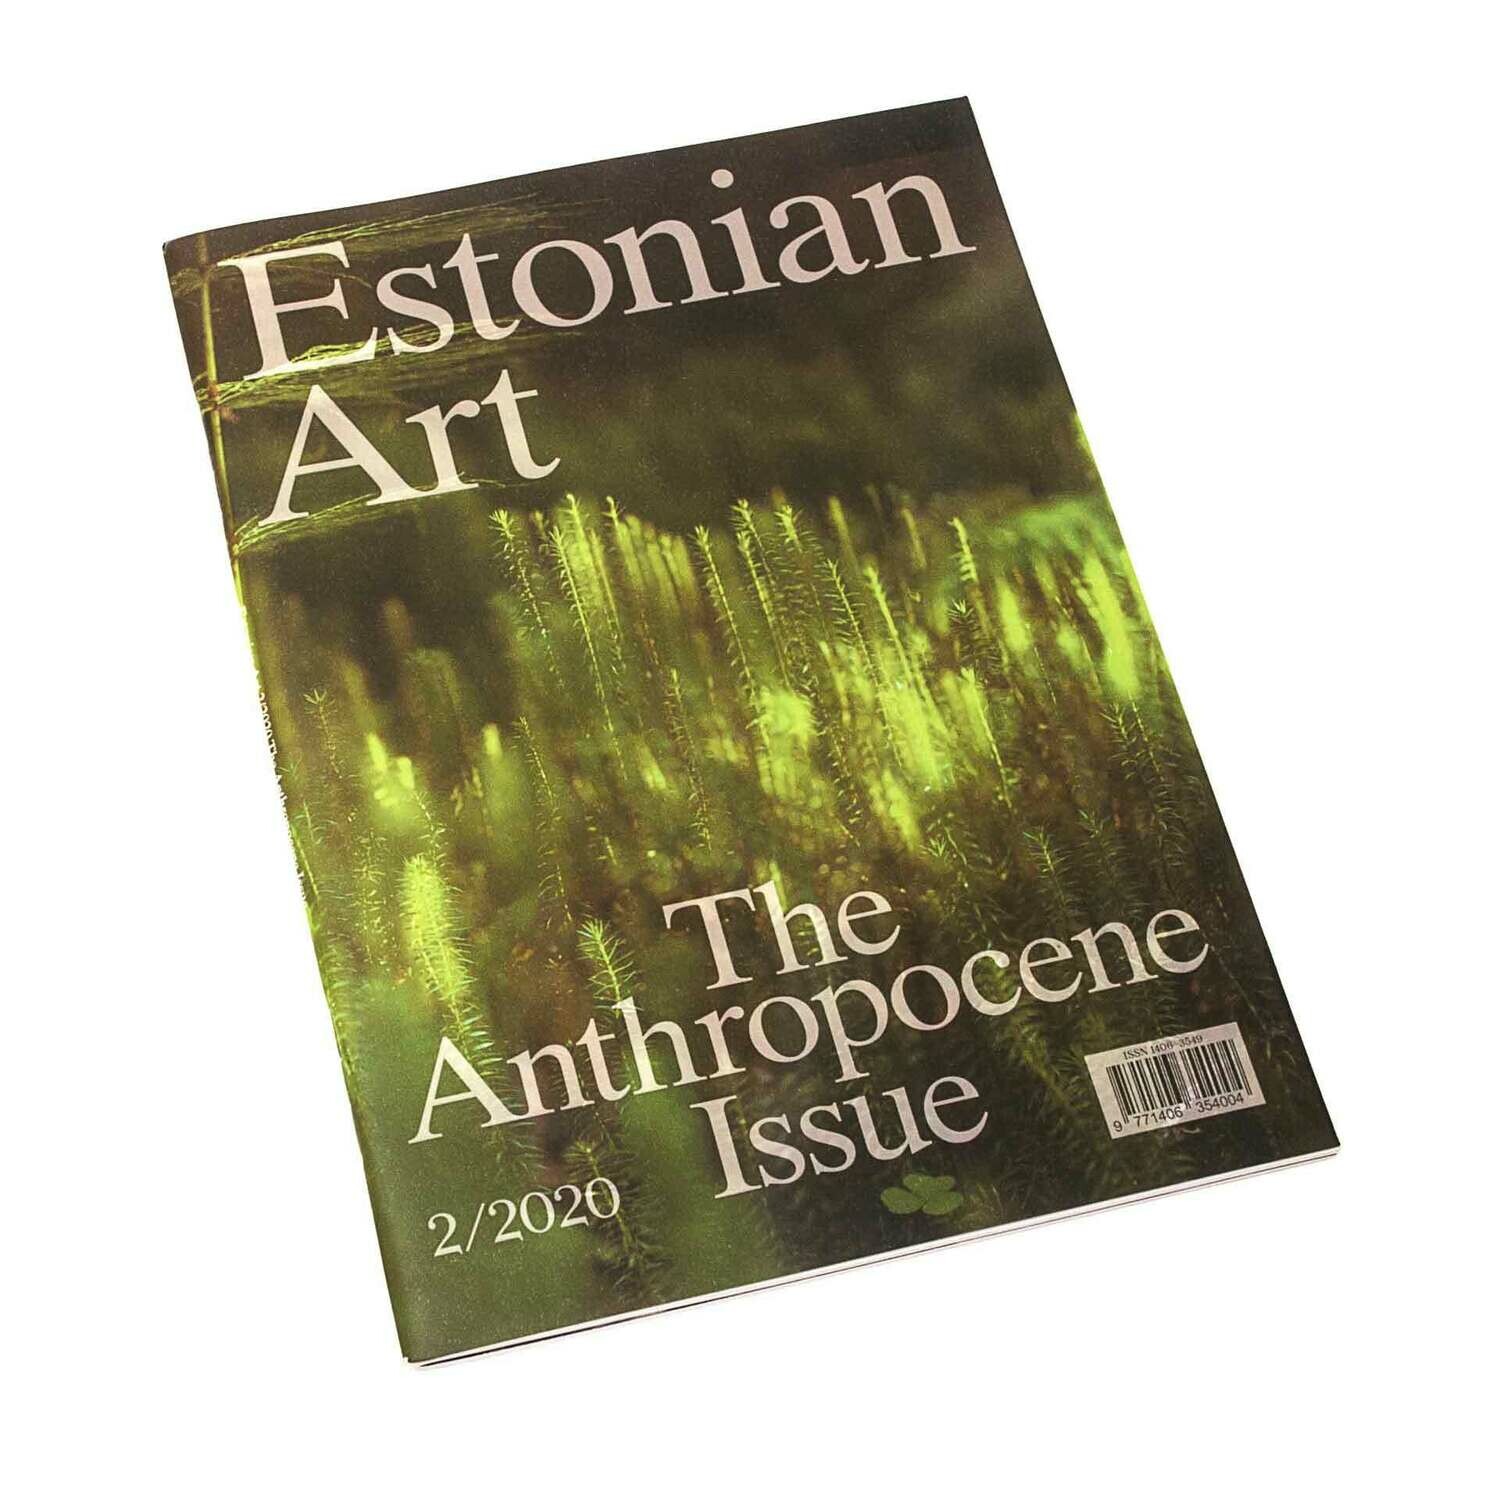 Estonian Art, 2/2020.